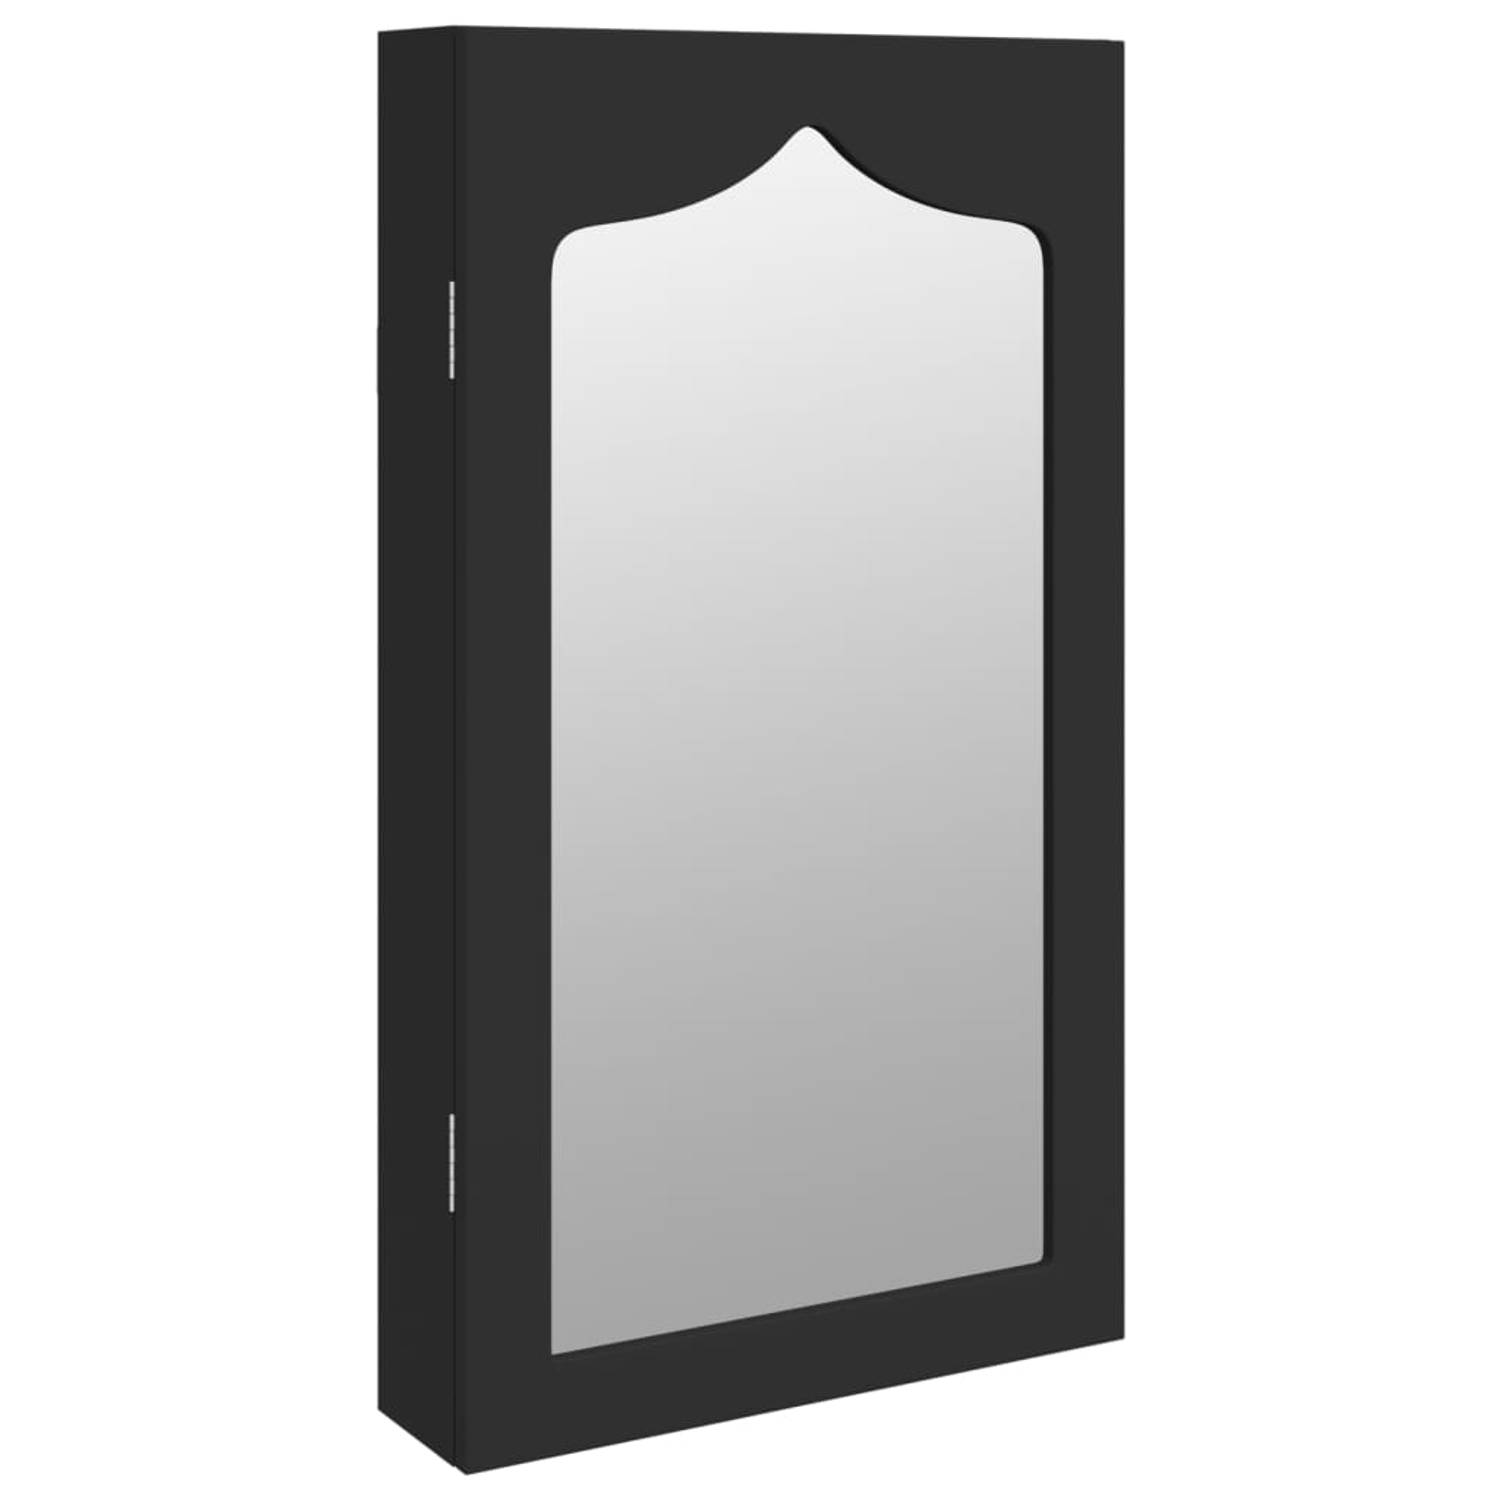 The Living Store opbergkast met spiegel - sieradenkast - 37.5 x 10 x 67 cm - zwart